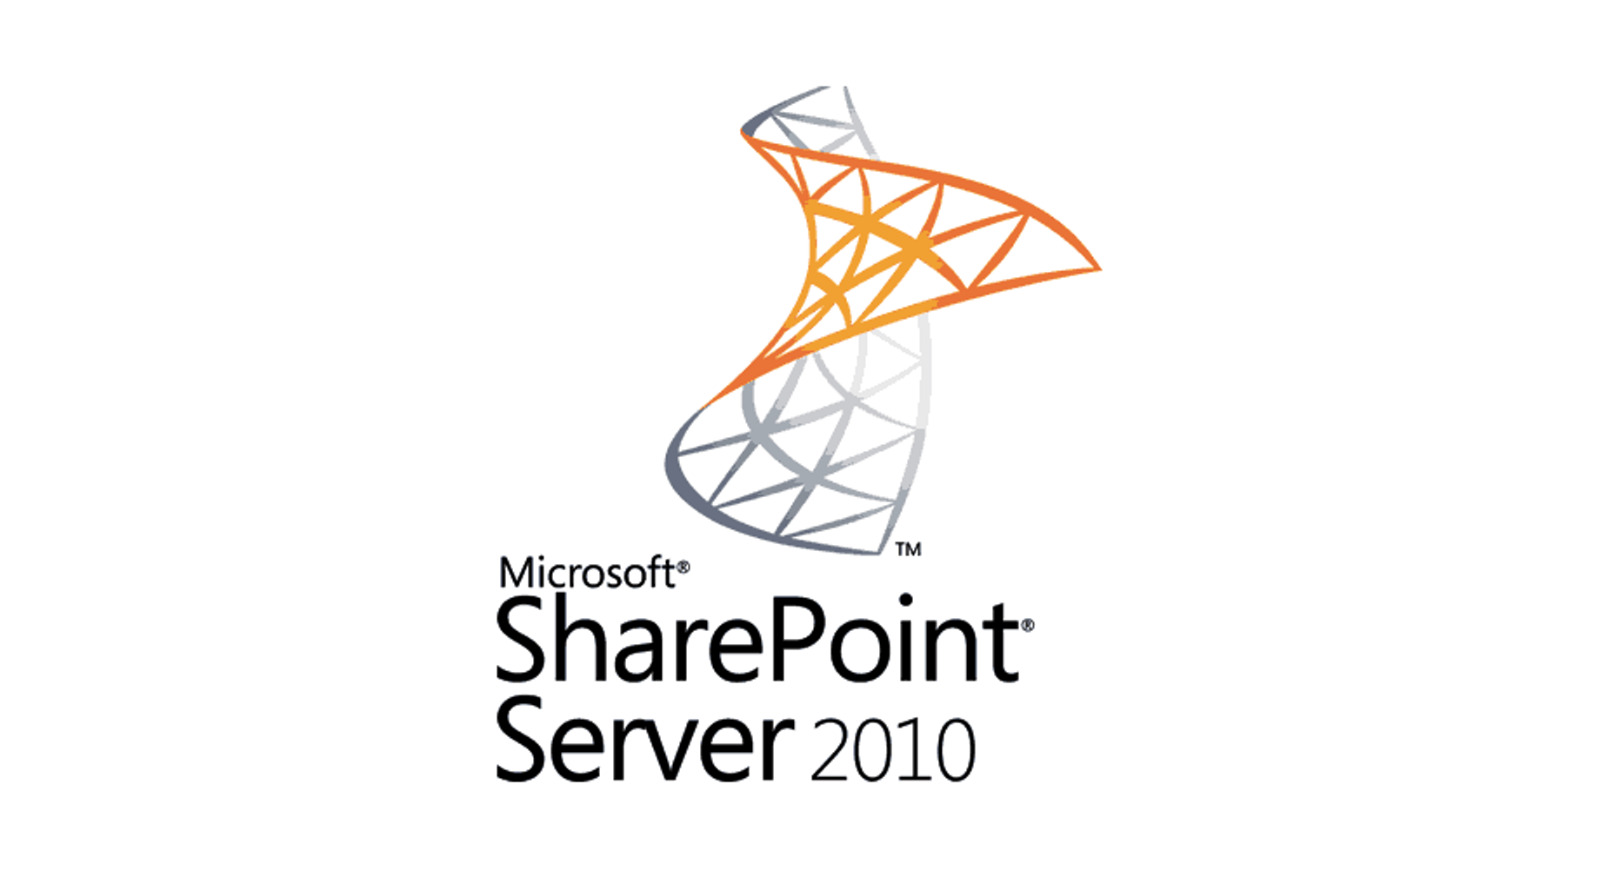 Microsoft SharePoint Server 2010 Enterprise Full Version w/ Key & License NEW